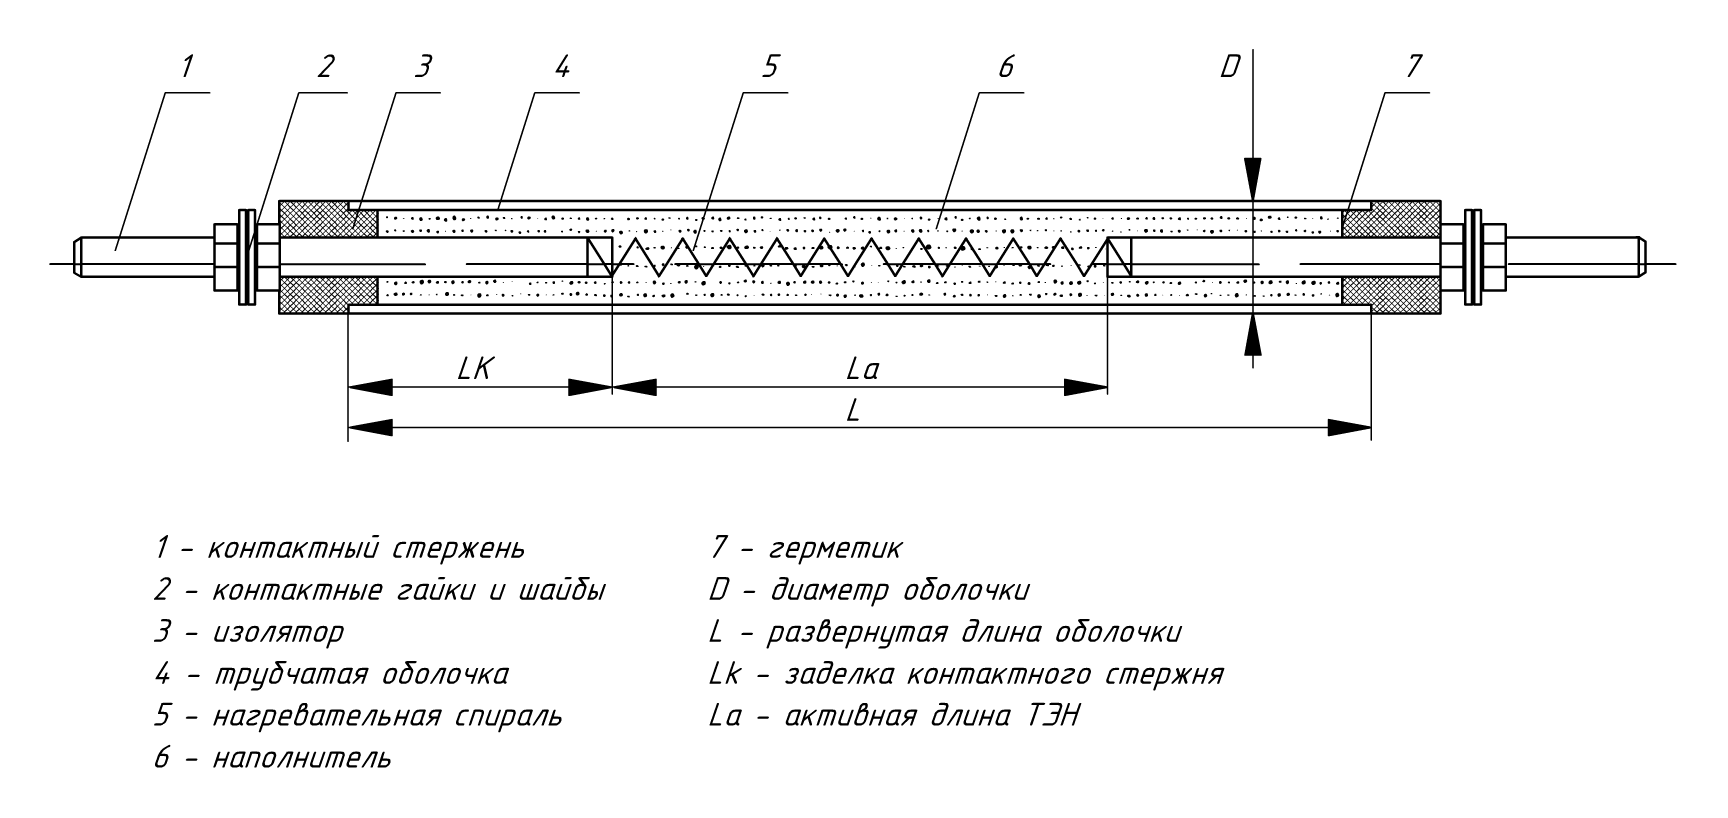 Конструкция трубчатых электронагревателей (ТЭН)